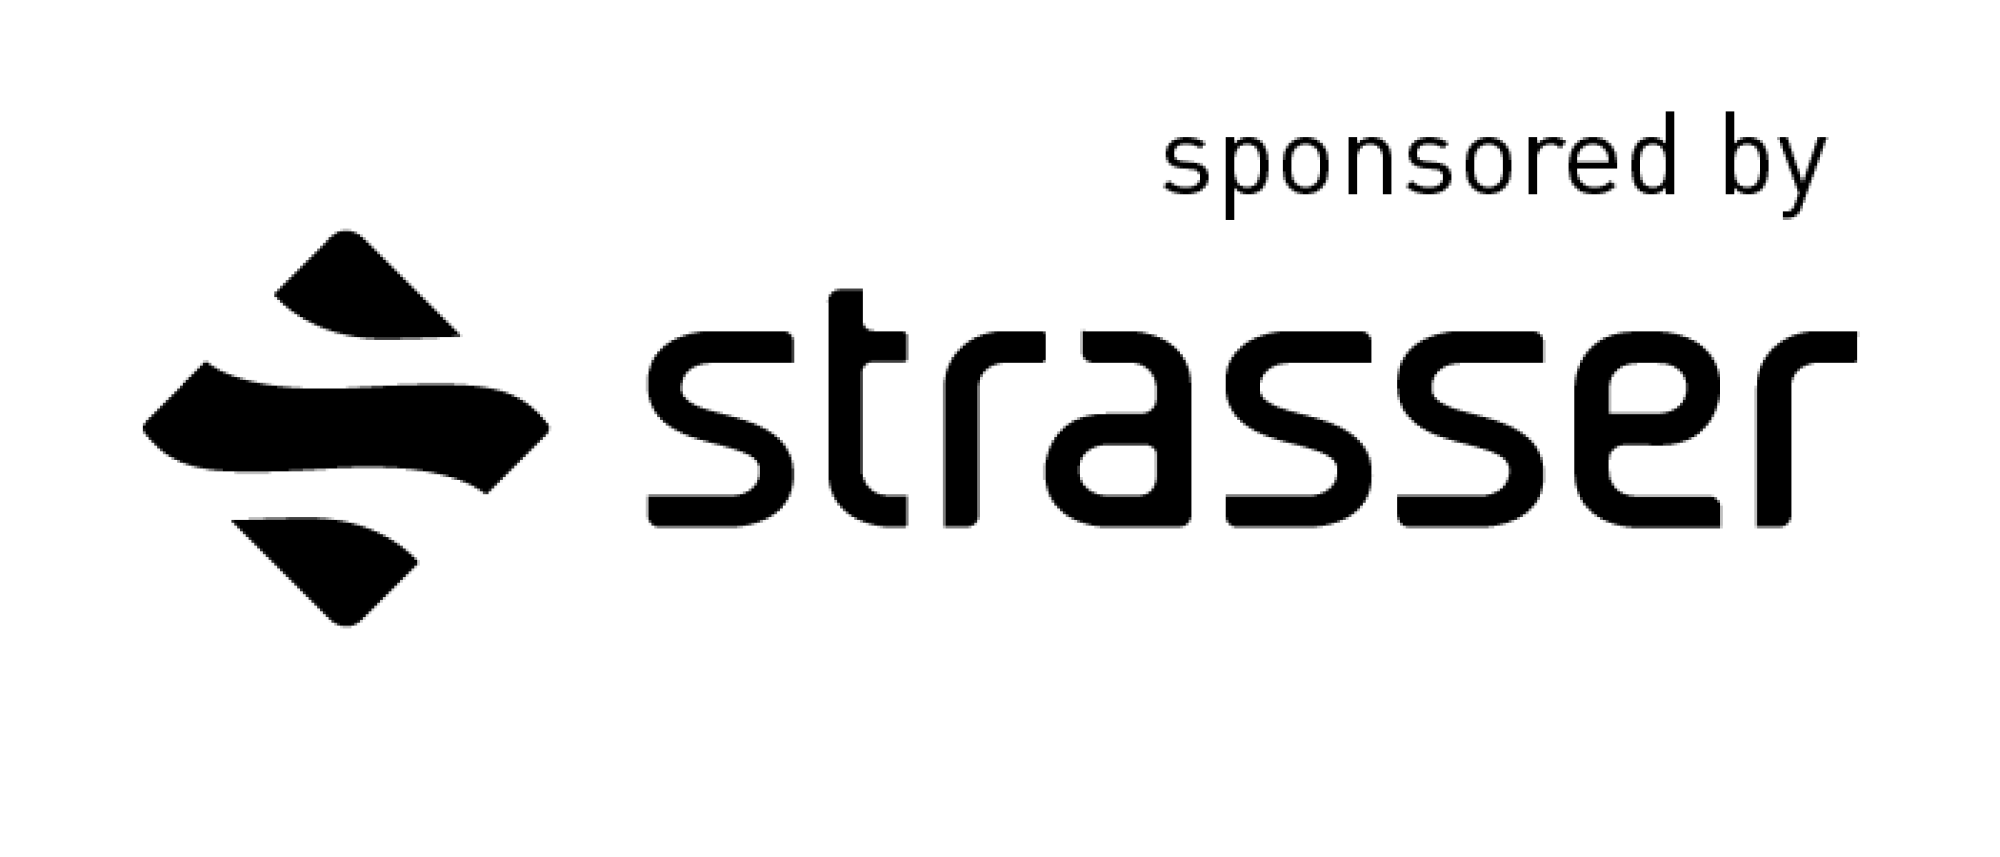 sponsored by strasser